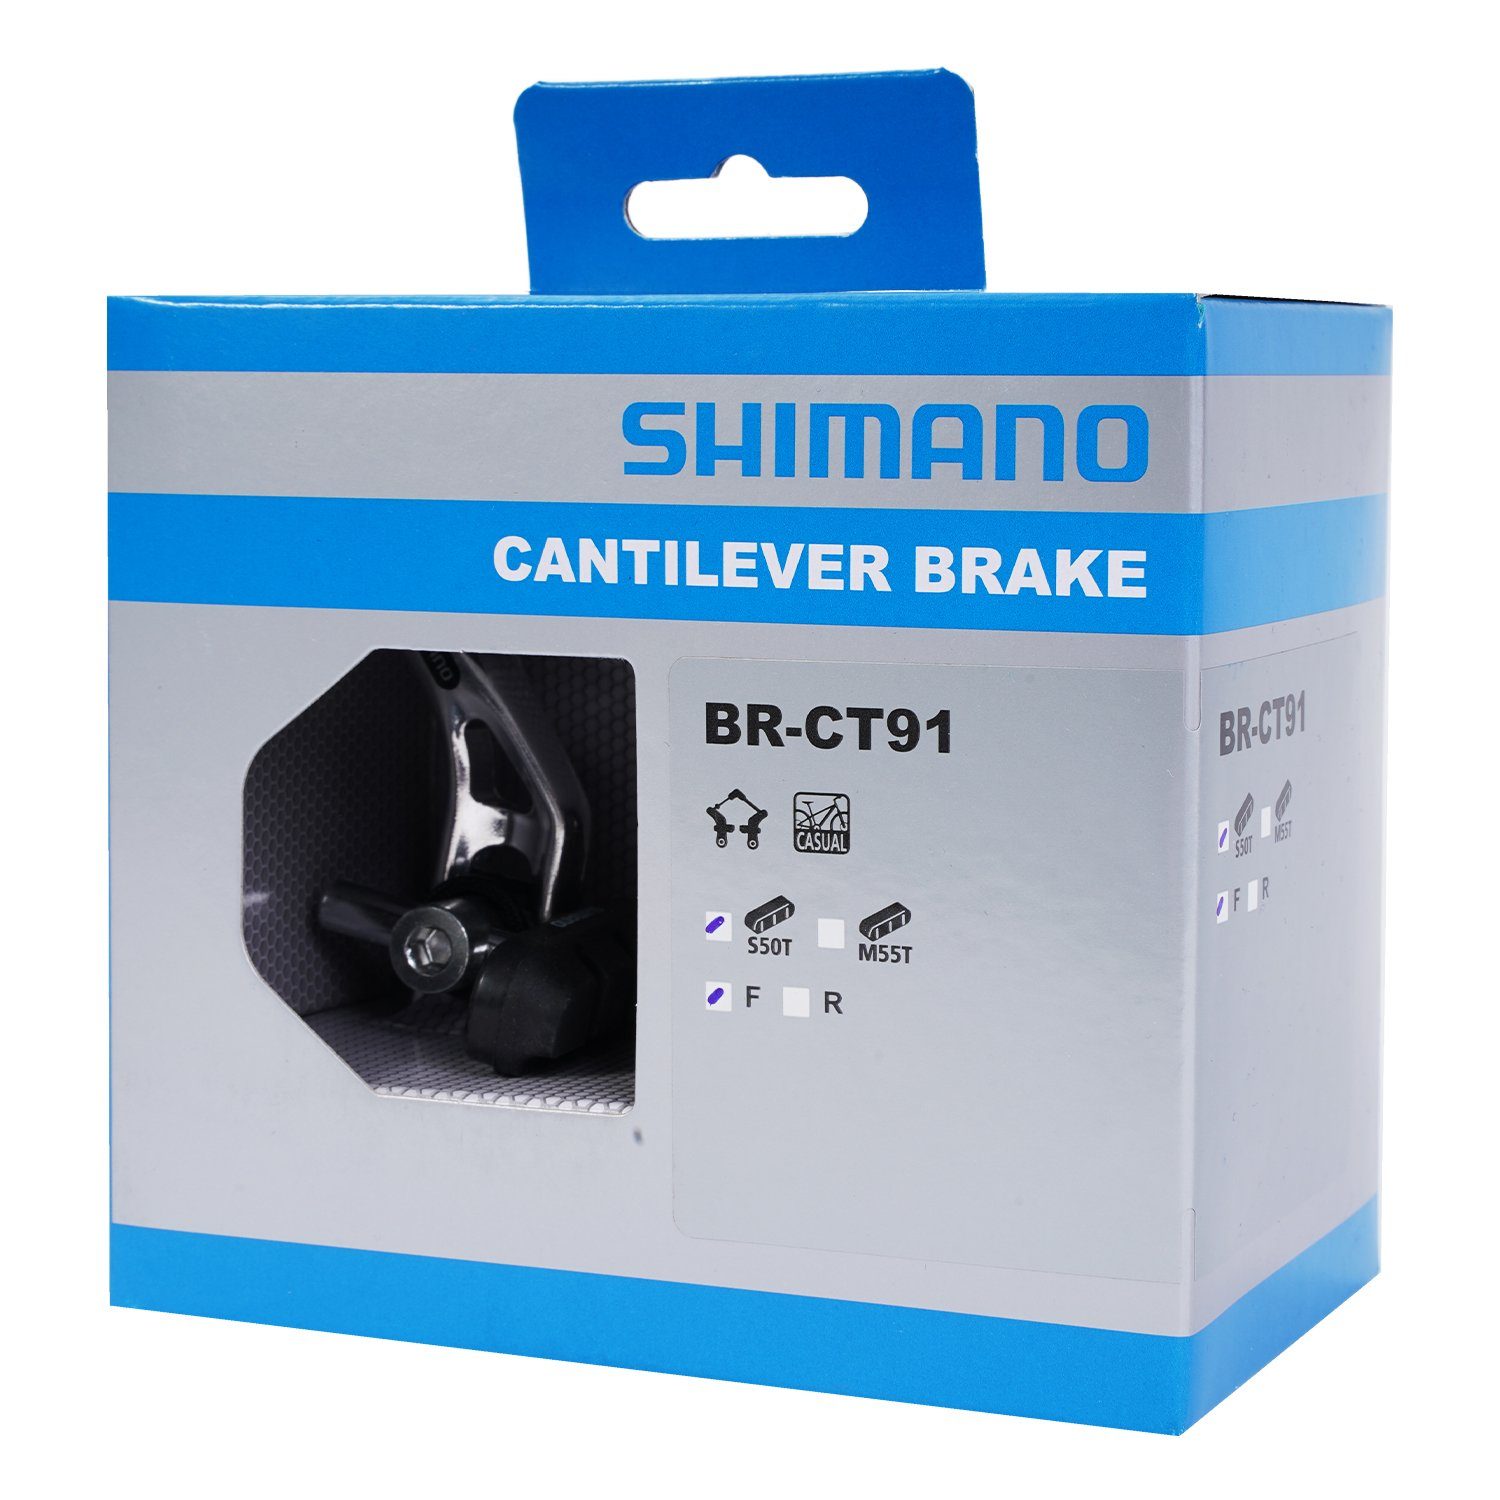 Bremsbelag, BR-CT91 mit Shimano Cantilever-Bremse Vorne Fahrradsattel Bremsen VR Canit-Lever